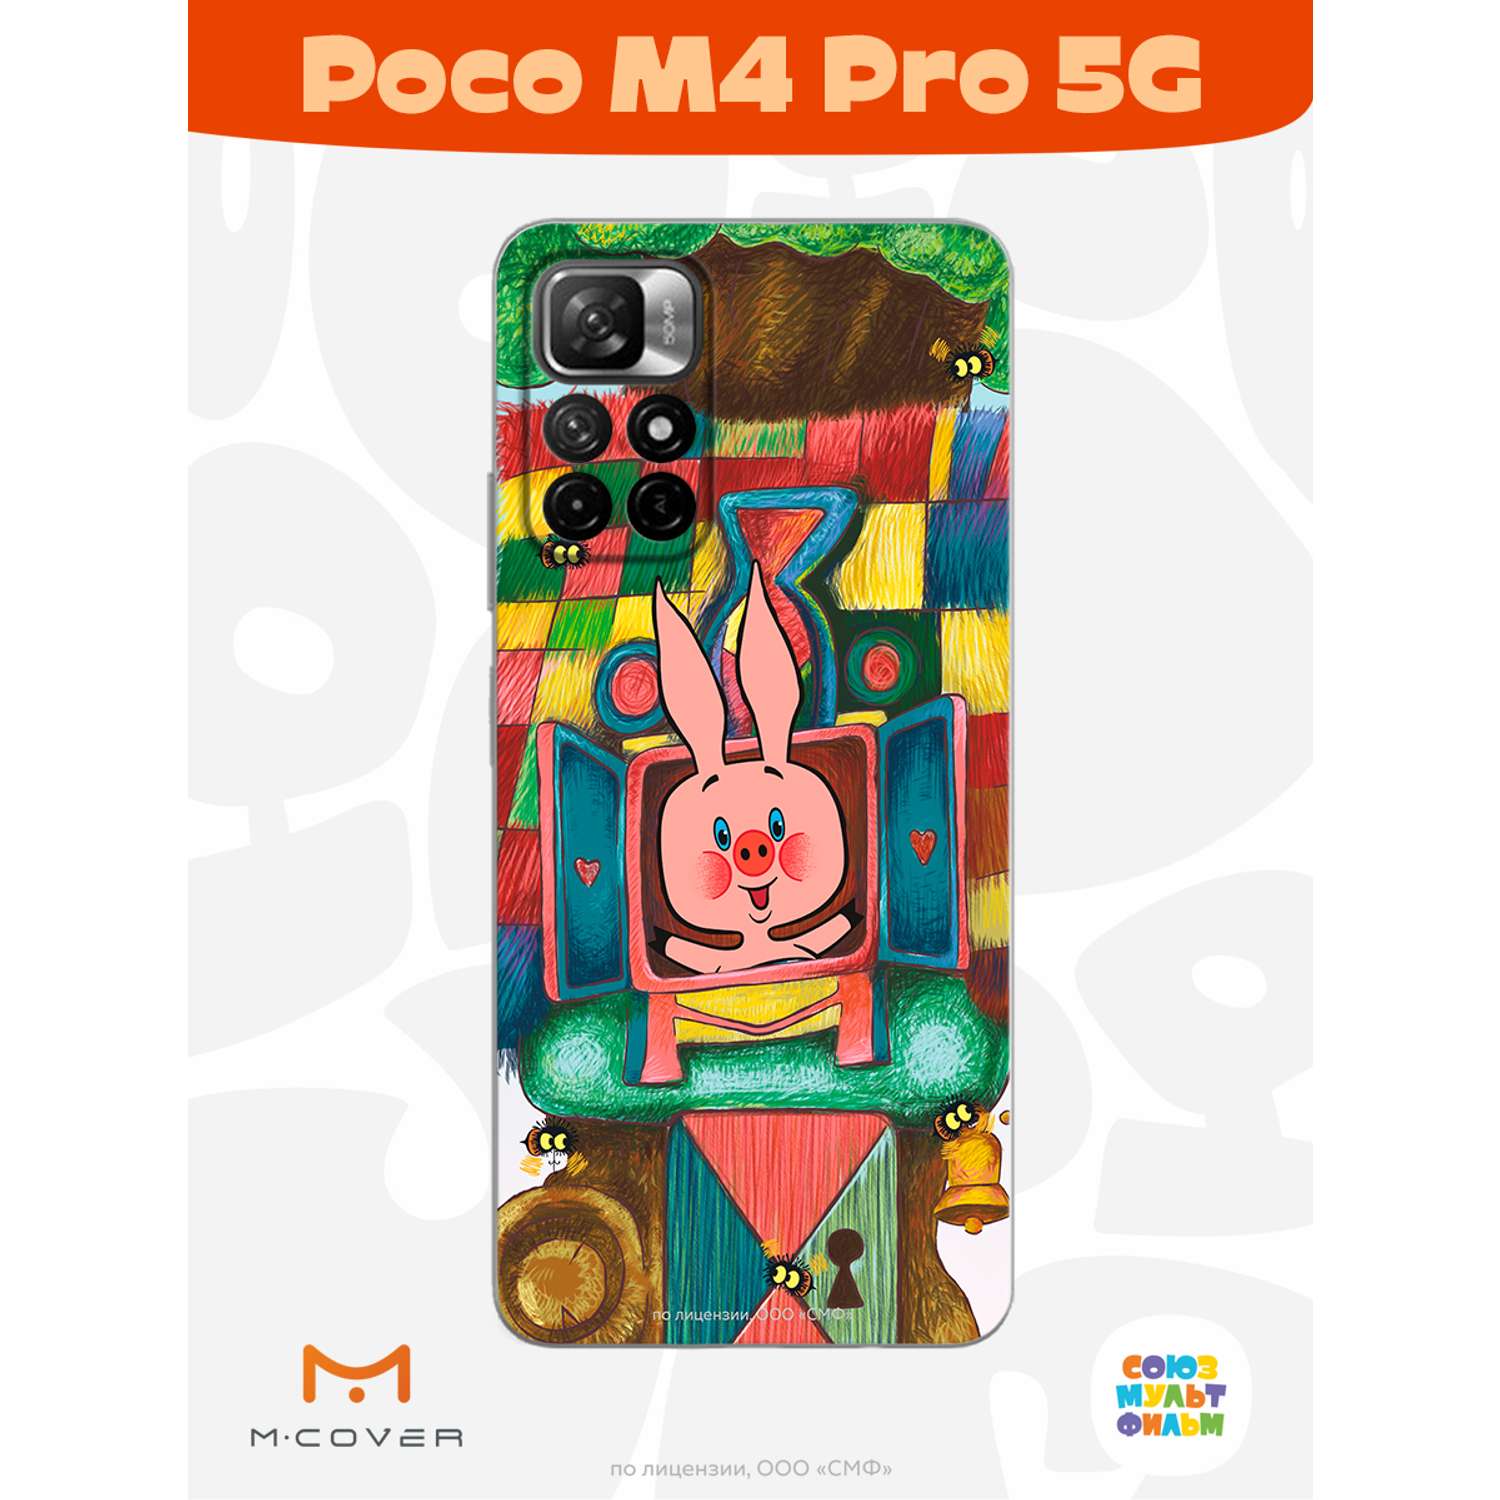 Силиконовый чехол Mcover для смартфона Poco M4 Pro 5G Союзмультфильм Довольный Пятачок - фото 2